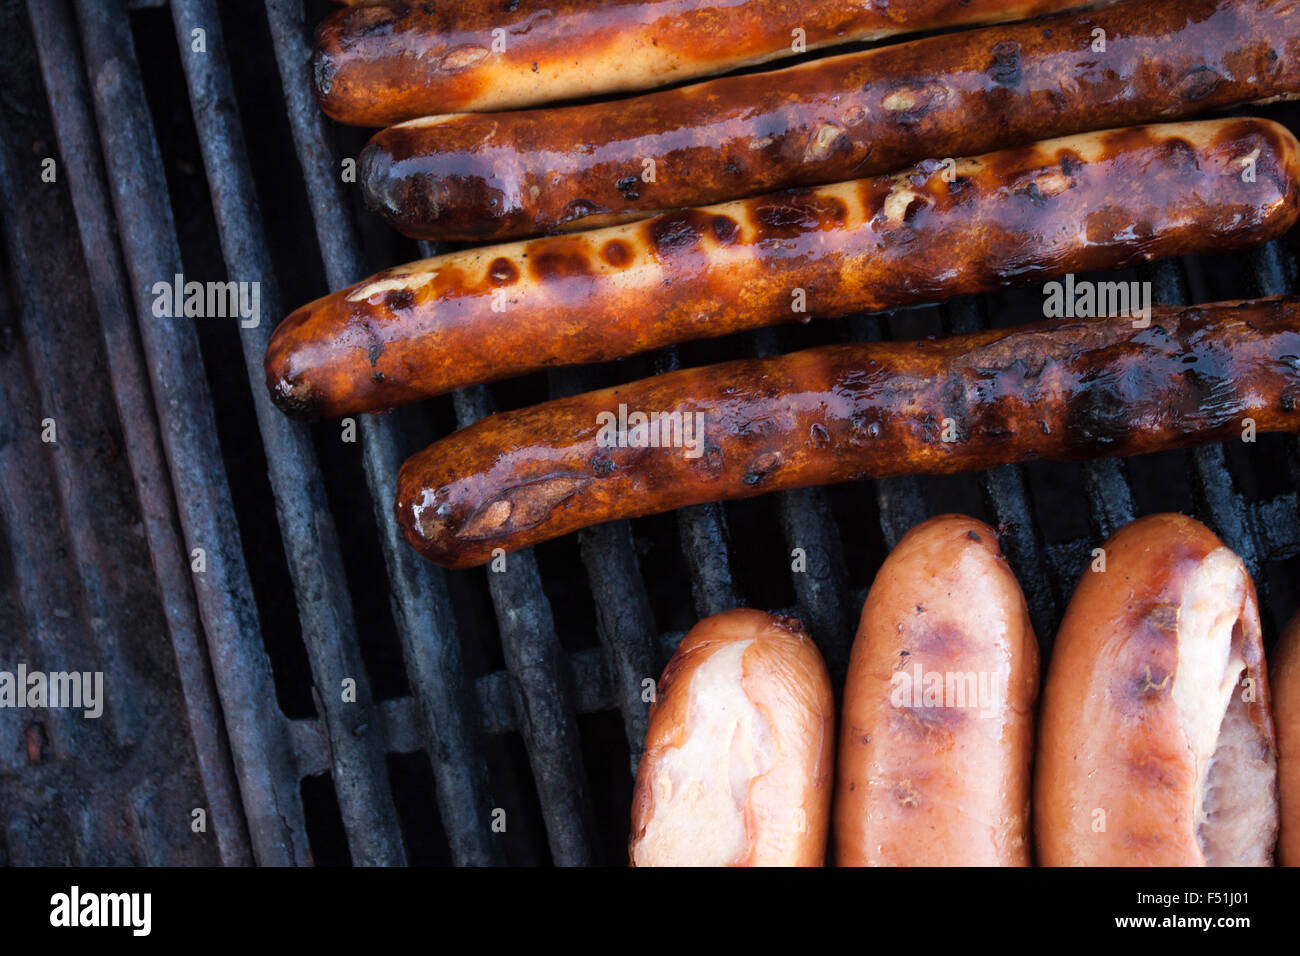 Grillen, Bratwürste und Wurst auf ein Gas-Grill Stockfotografie - Alamy